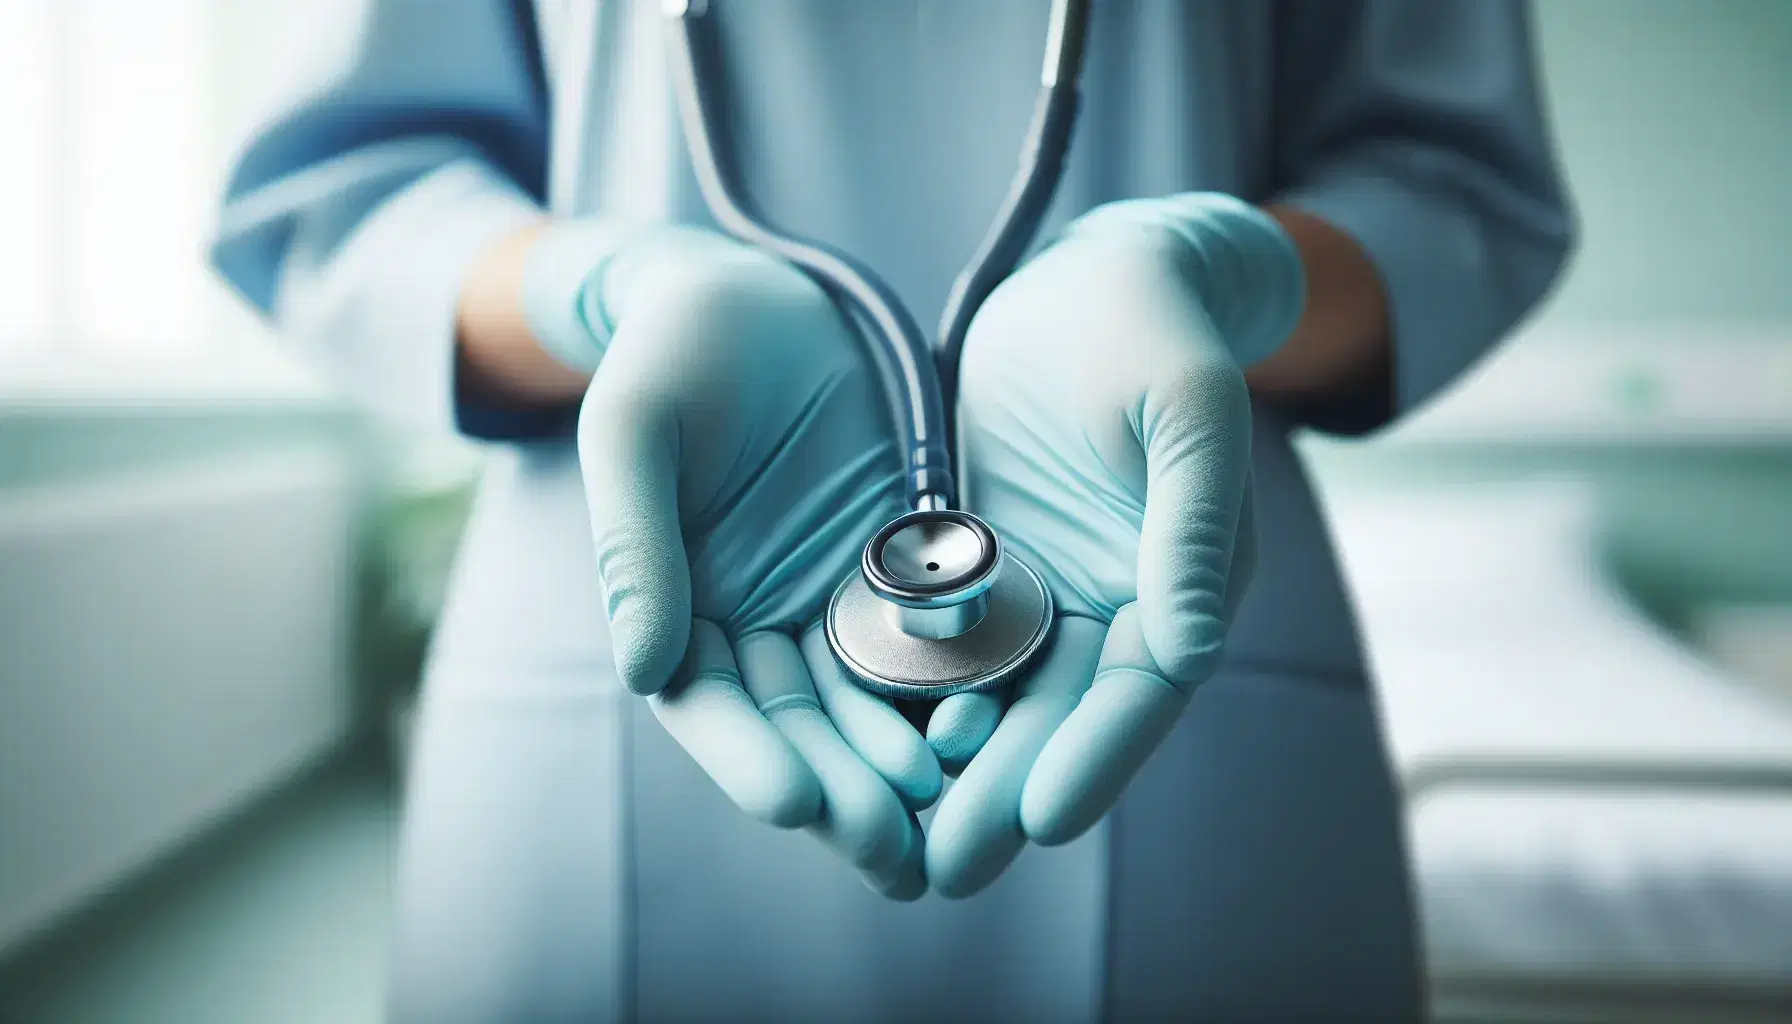 Manos con guantes azules claros de profesional de enfermería sosteniendo un estetoscopio con fondo desenfocado en tonos verdes y blancos.